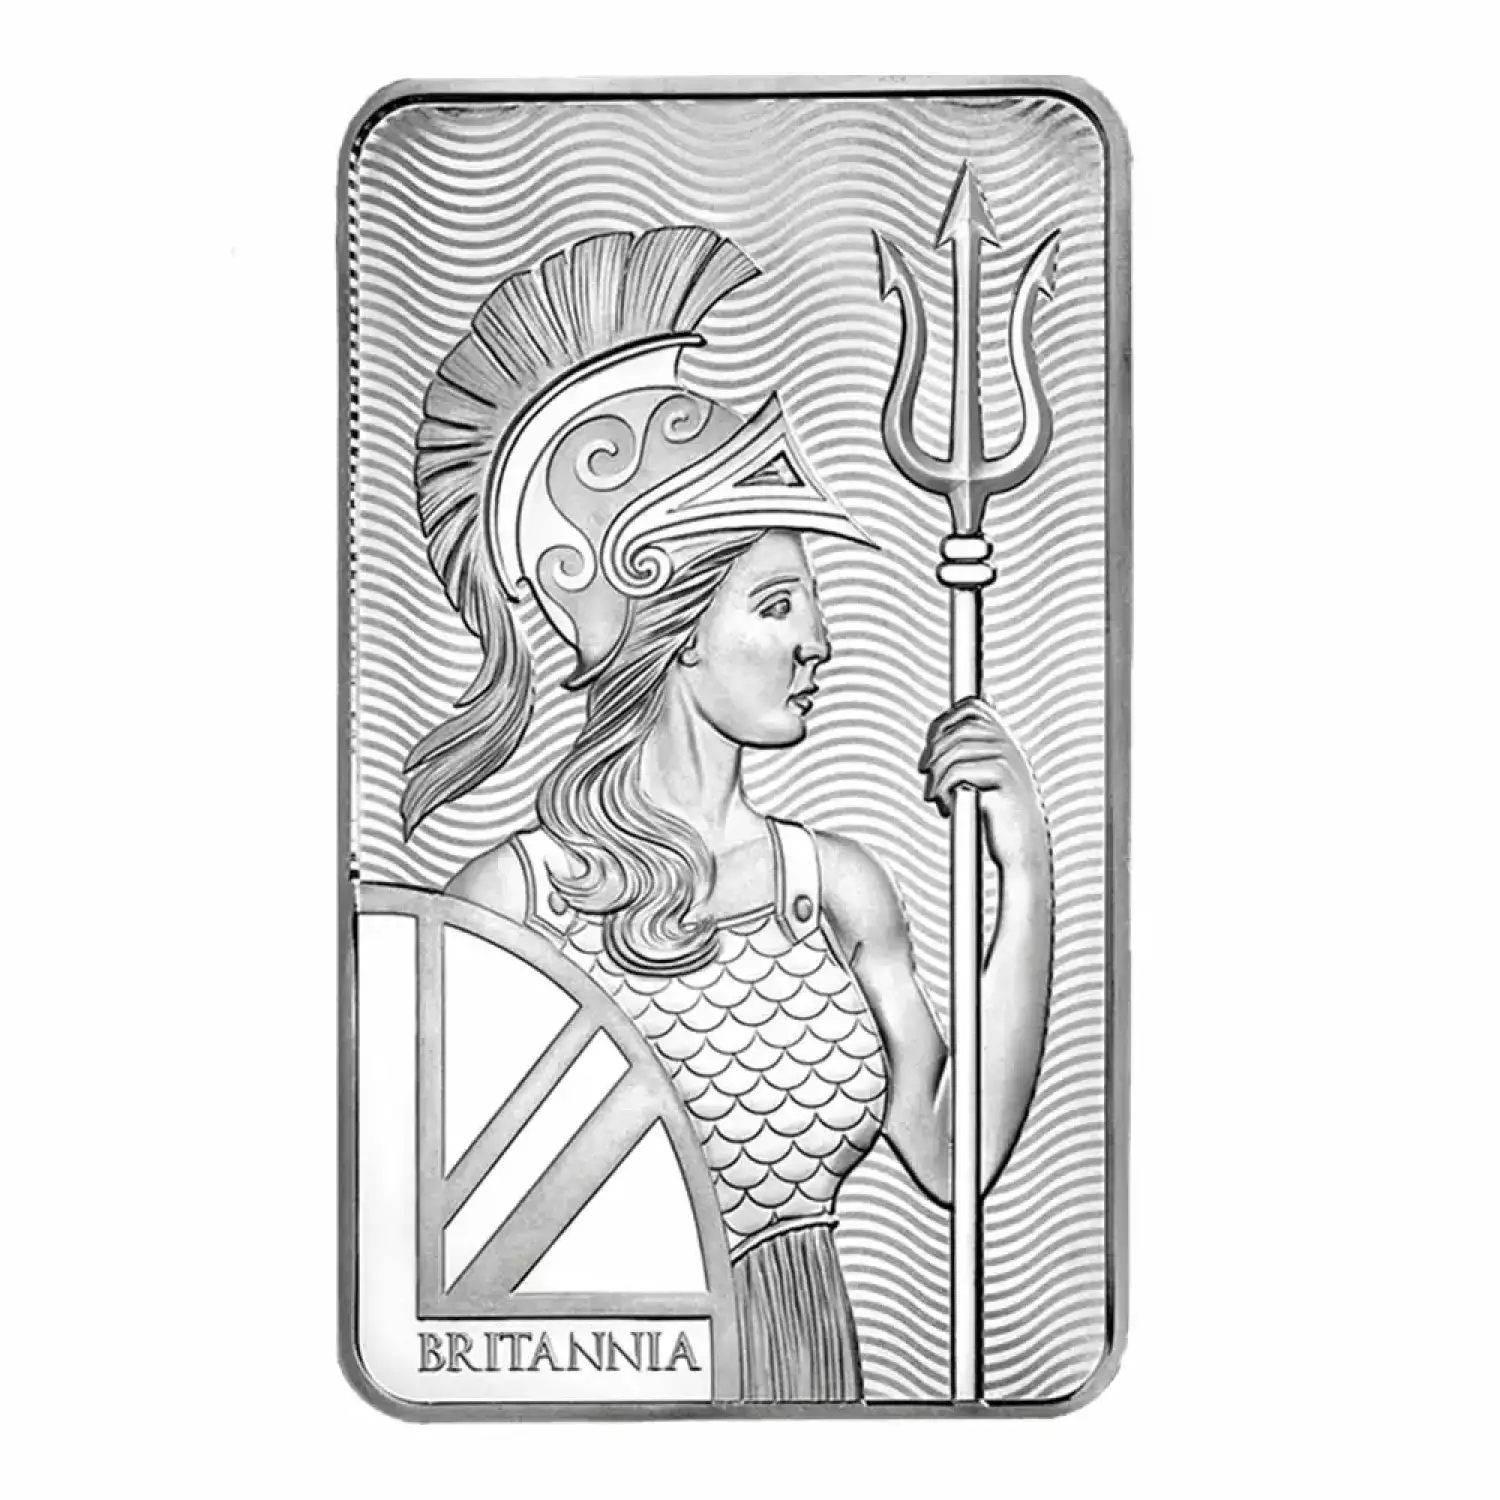 10 oz Silver Britannia Bar (2)